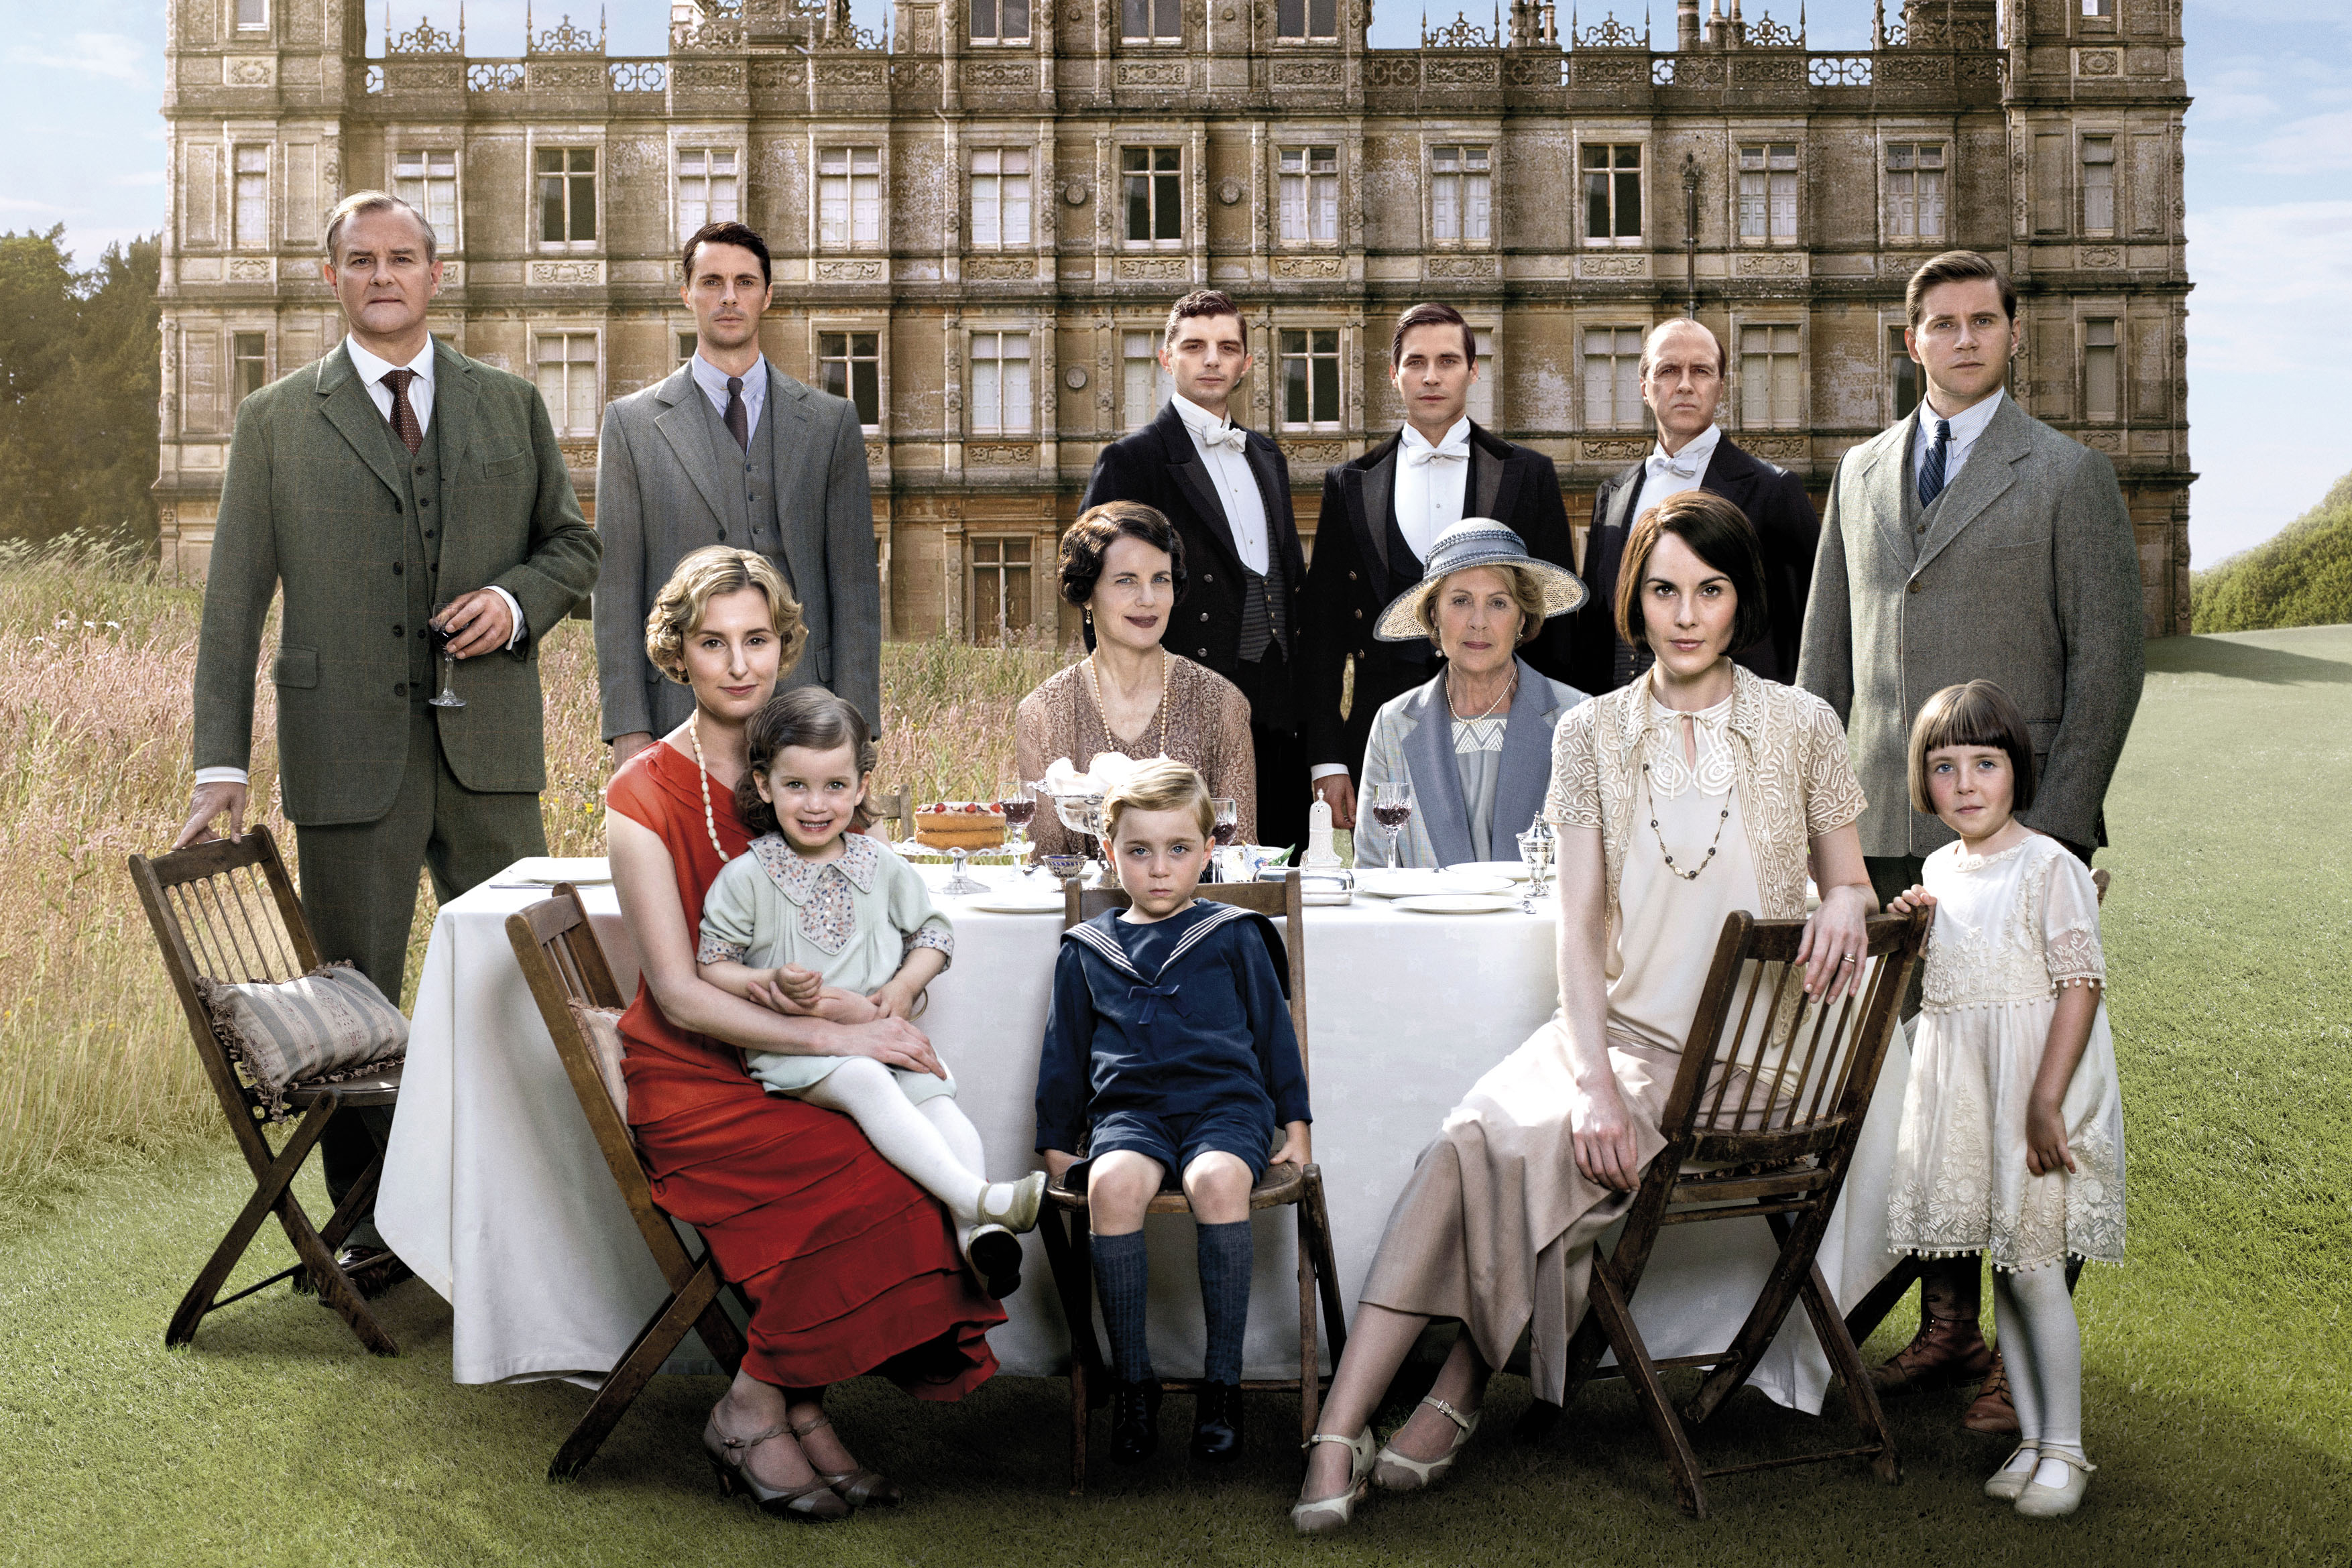 Downton Abbey: da serie tv a film? Ecco le ultime indiscrezioni